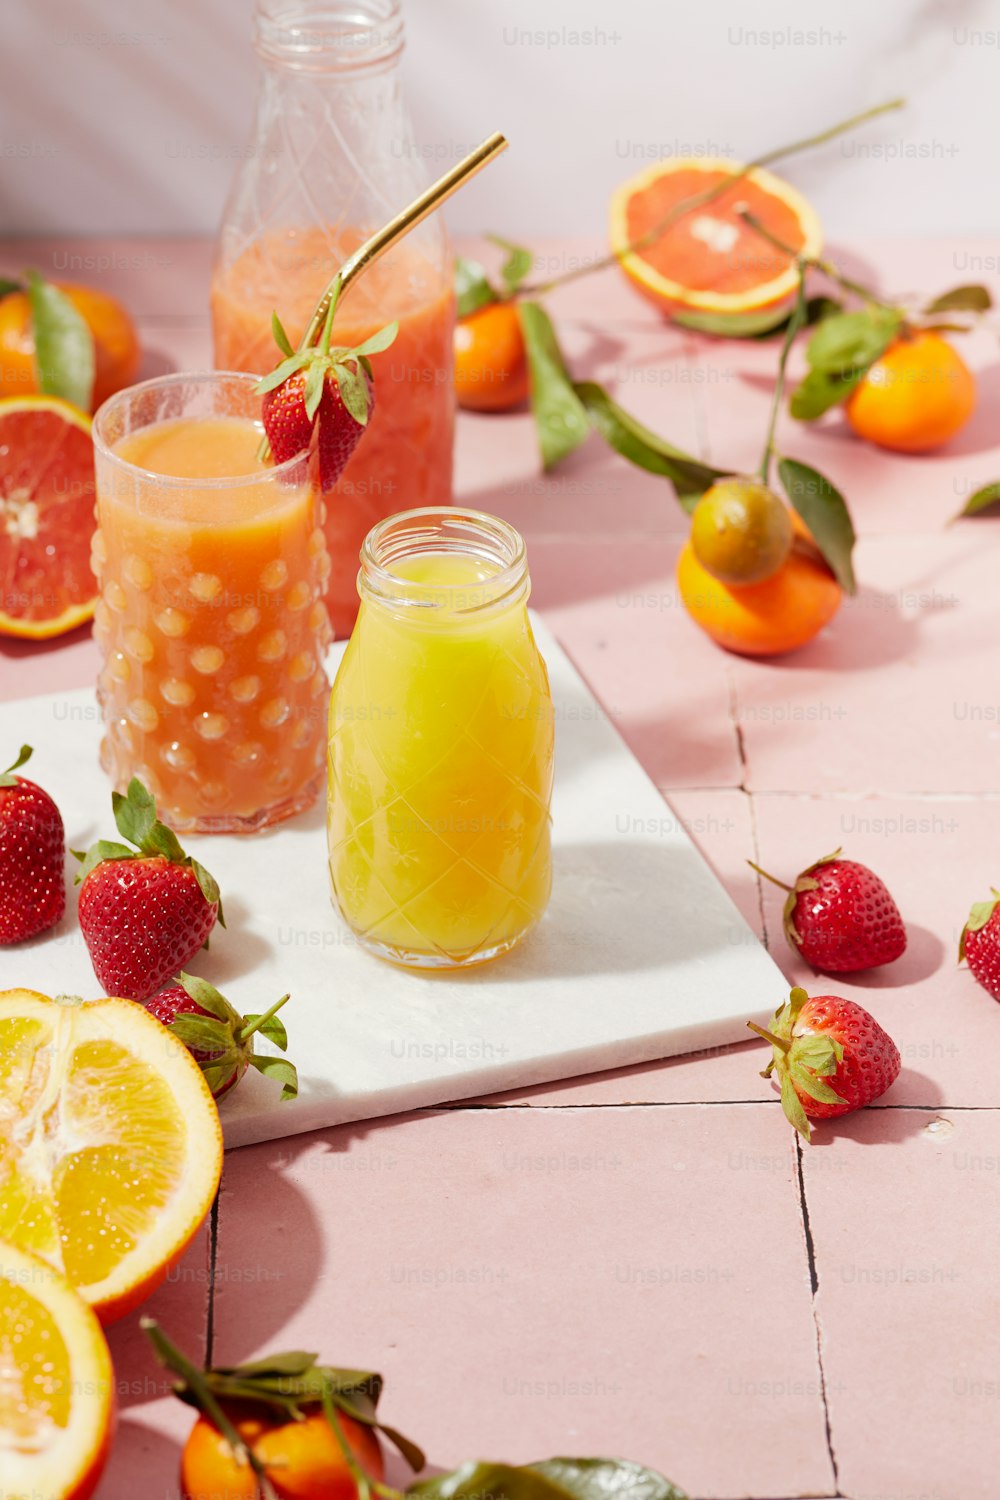 オレンジ、イチゴ、液体の瓶をトッピングしたテーブル